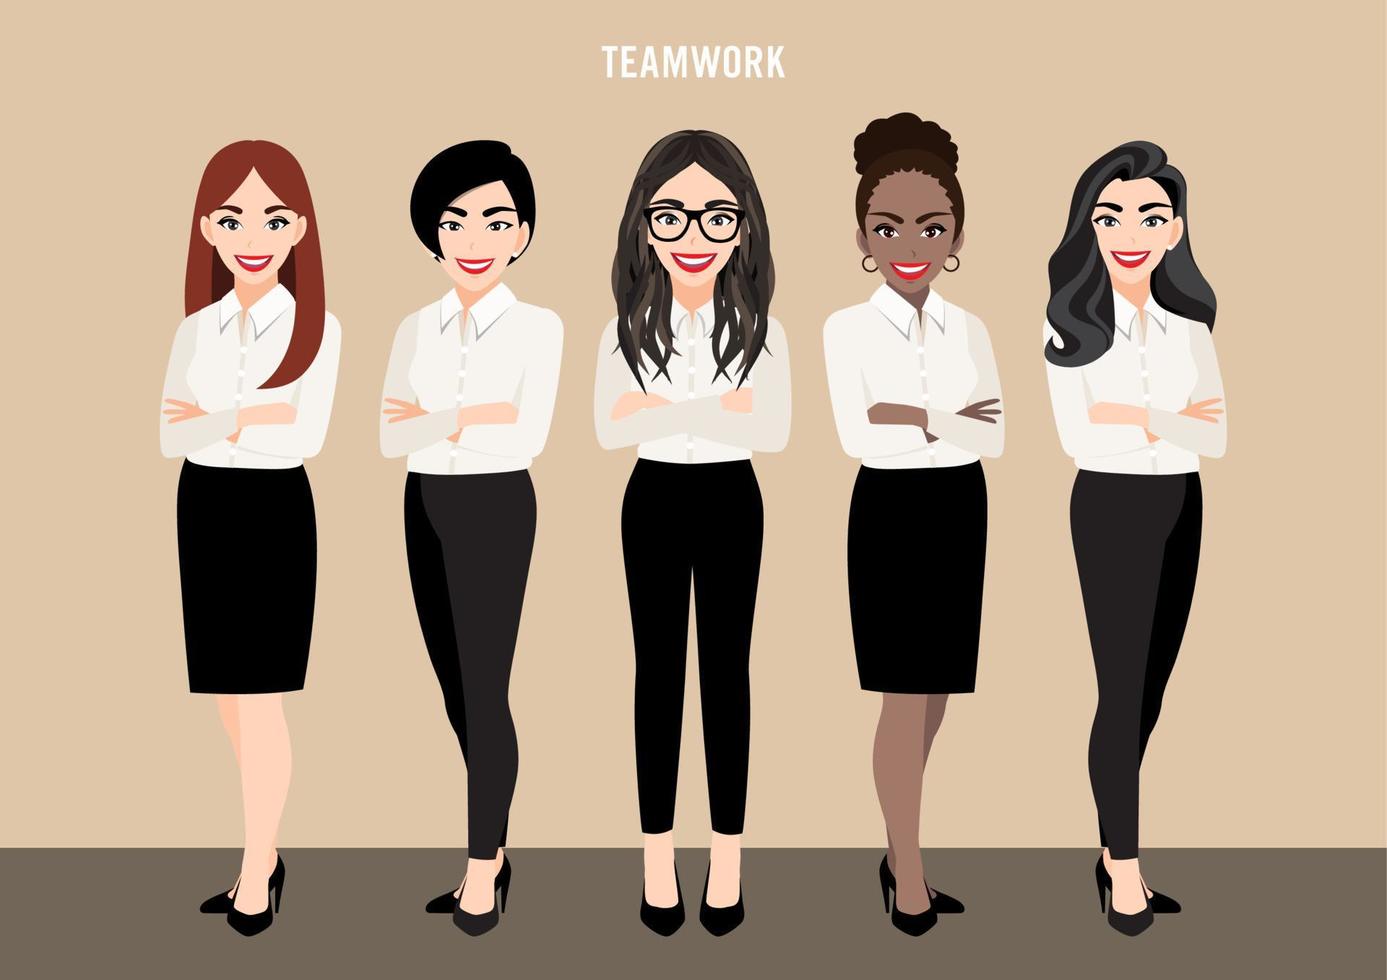 personnage de dessin animé avec ensemble d'équipe commerciale ou concept de leadership avec des femmes d'affaires. illustration vectorielle en style cartoon. vecteur